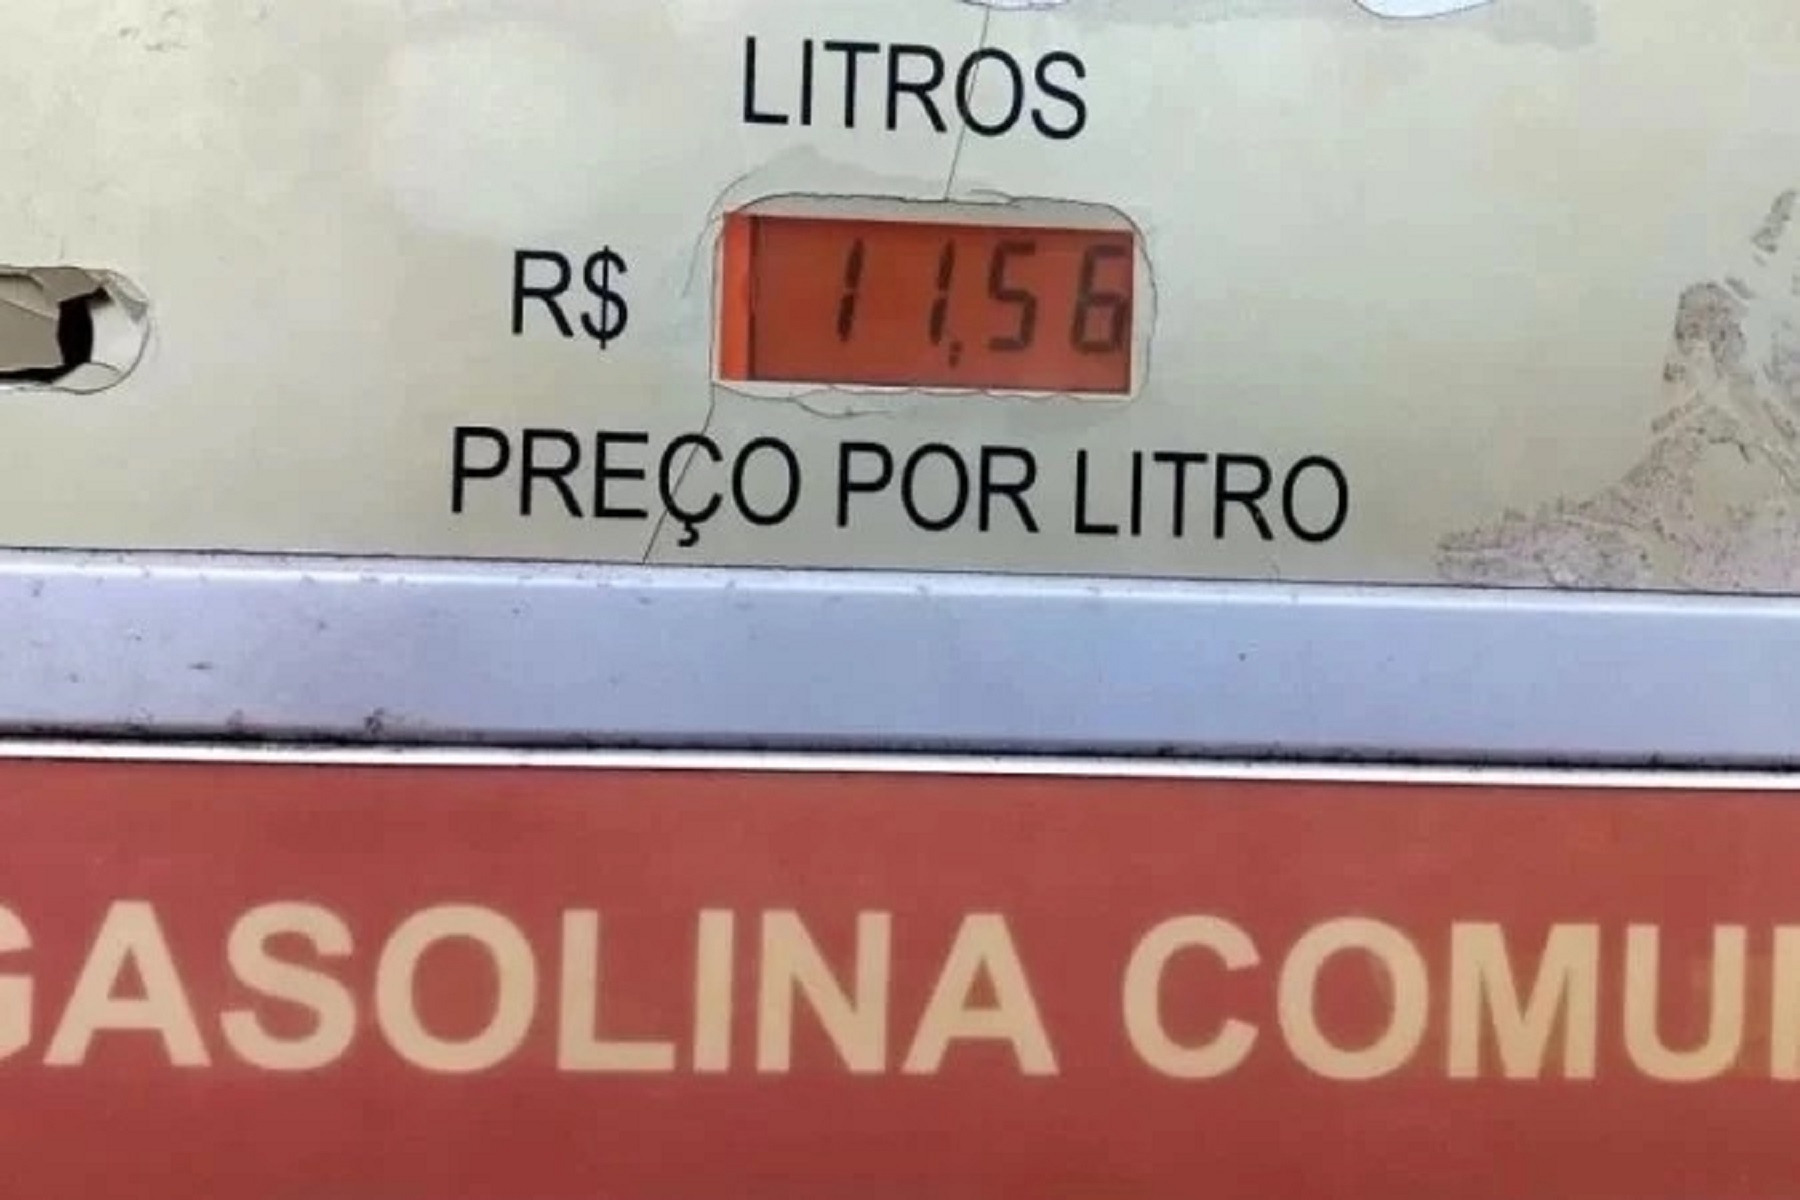 Litro da gasolina no Acre já chega a custar R$ 11,56